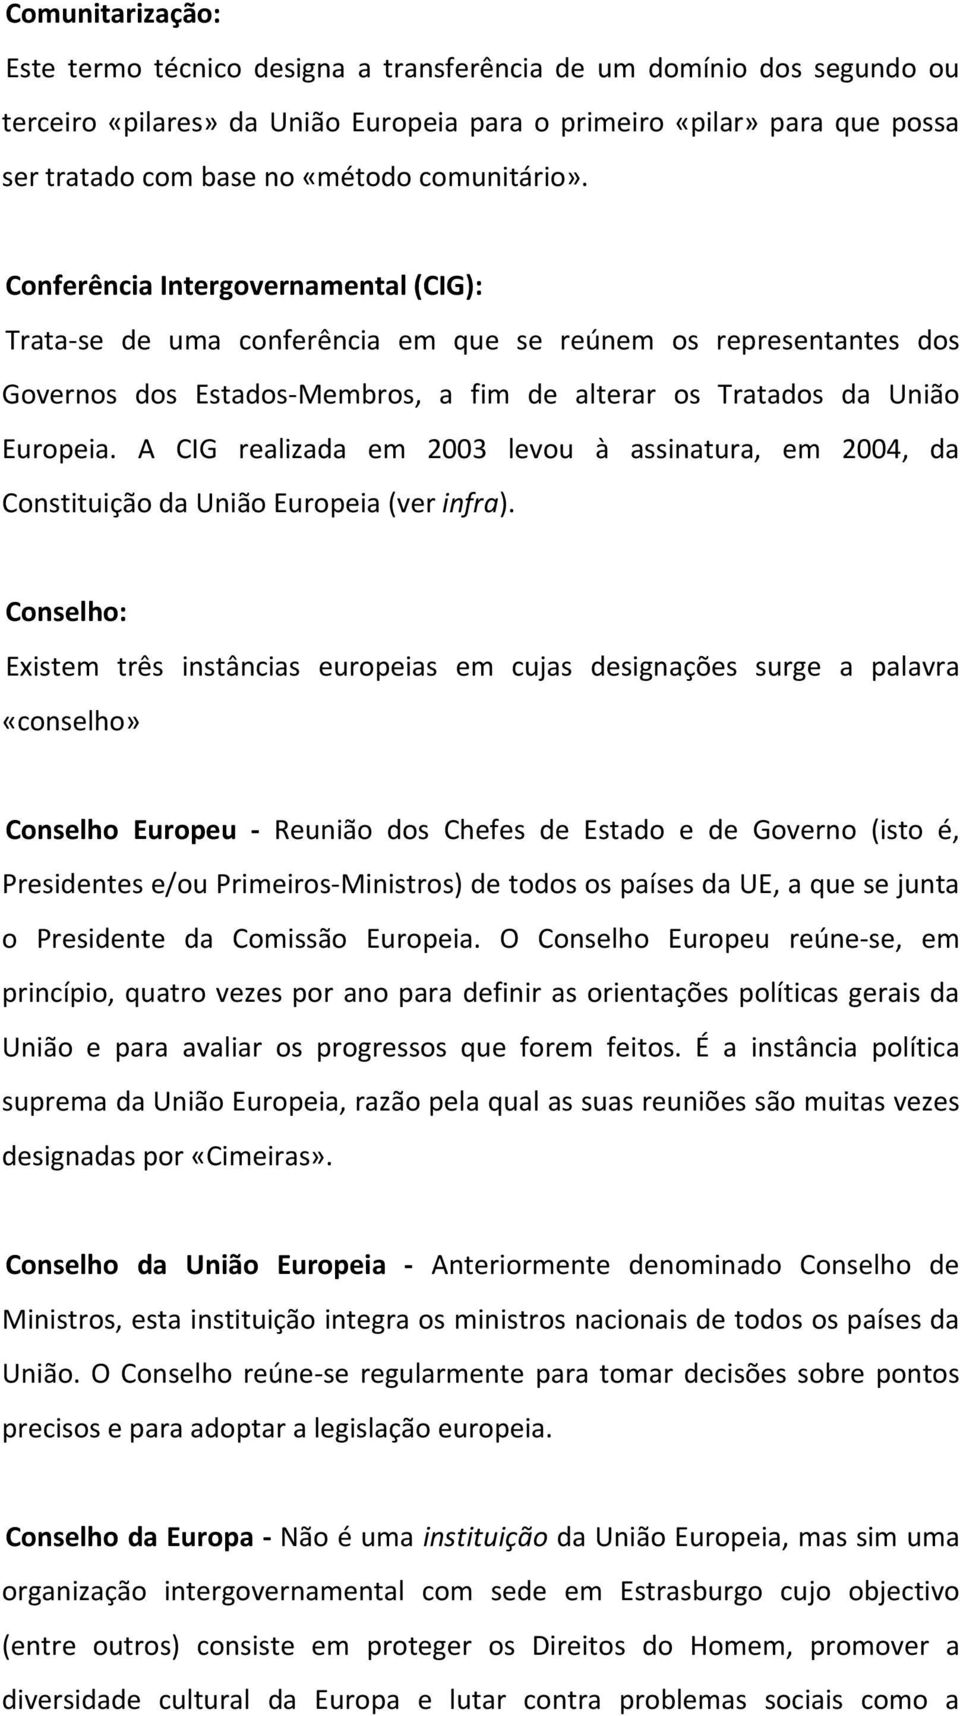 A CIG realizada em 2003 levou à assinatura, em 2004, da Constituição da União Europeia (ver infra).